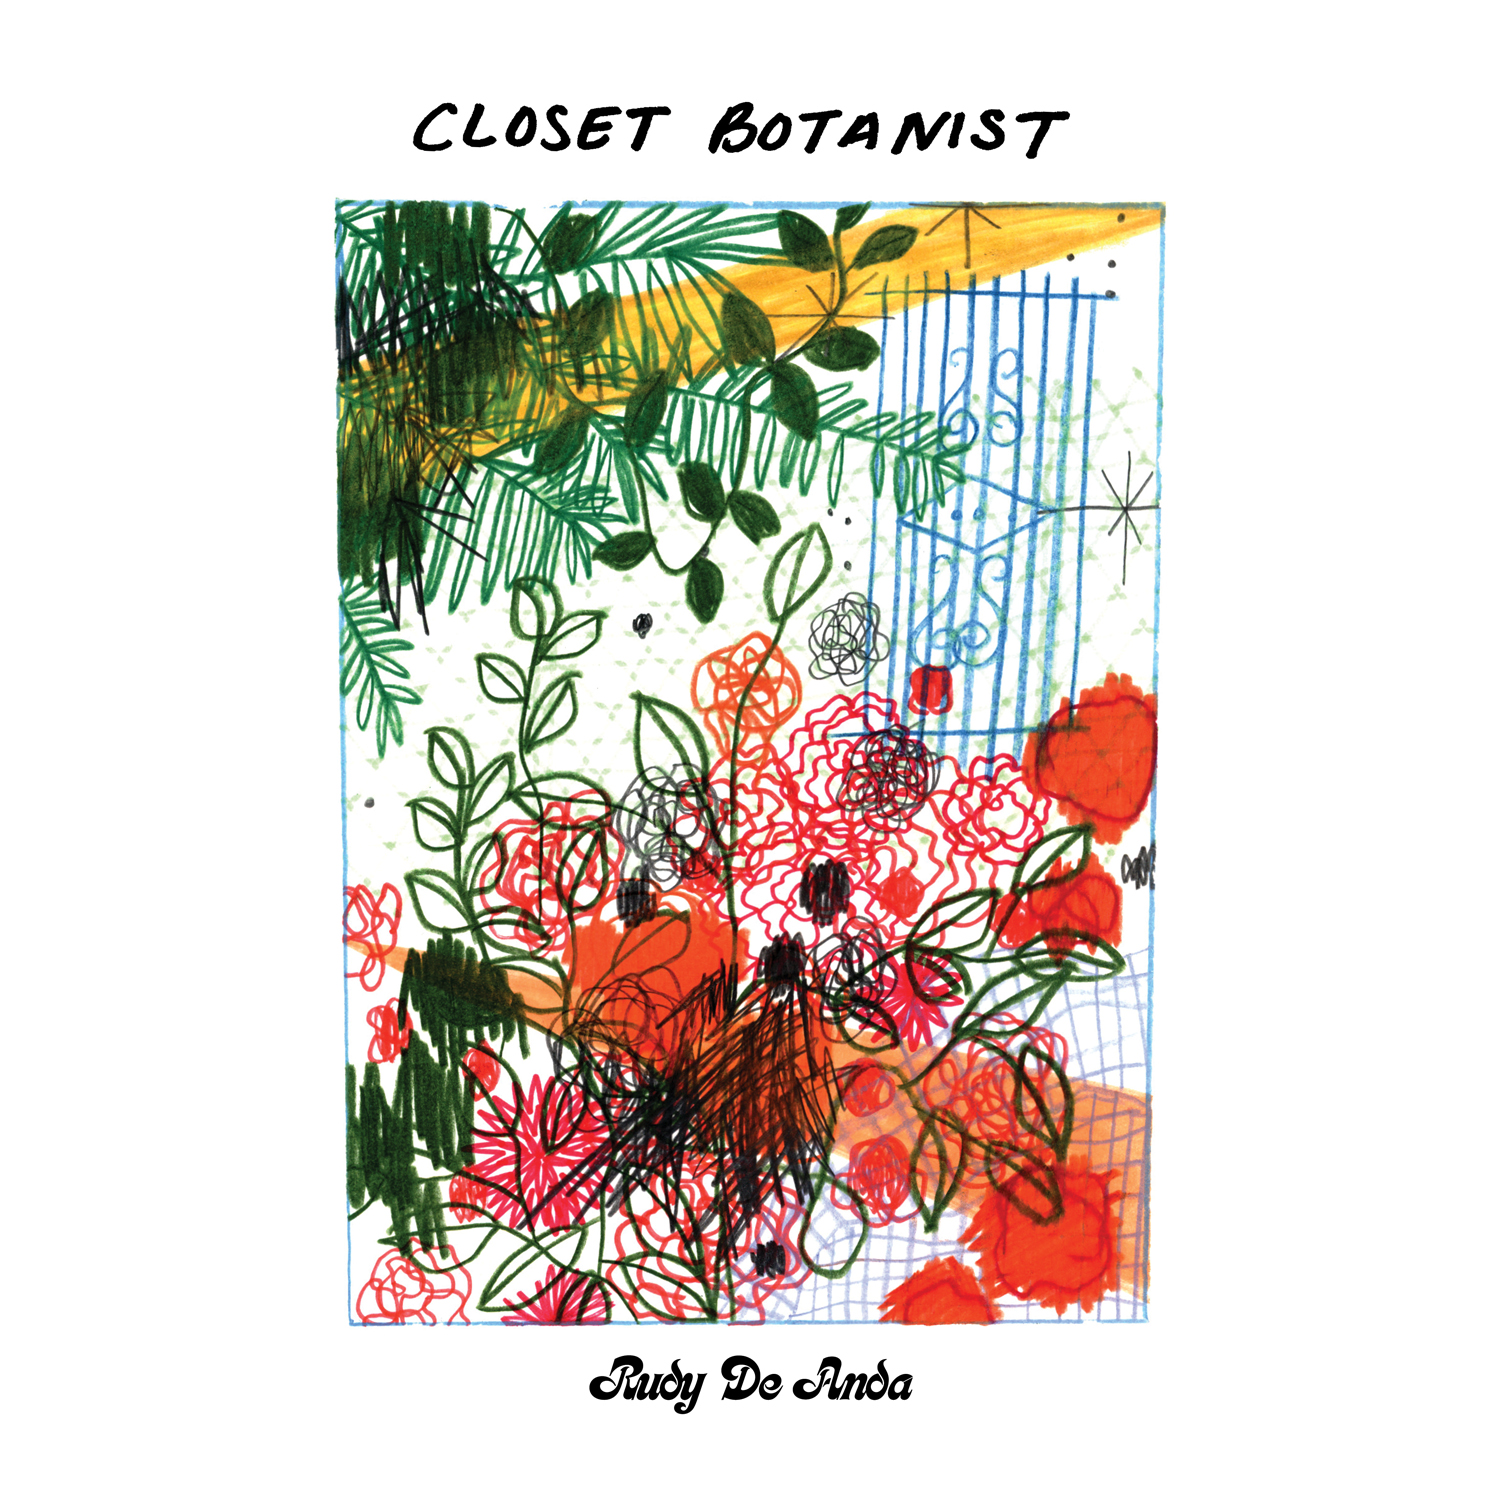 Rudy de Anda "Closet Botanist" LP Limitado